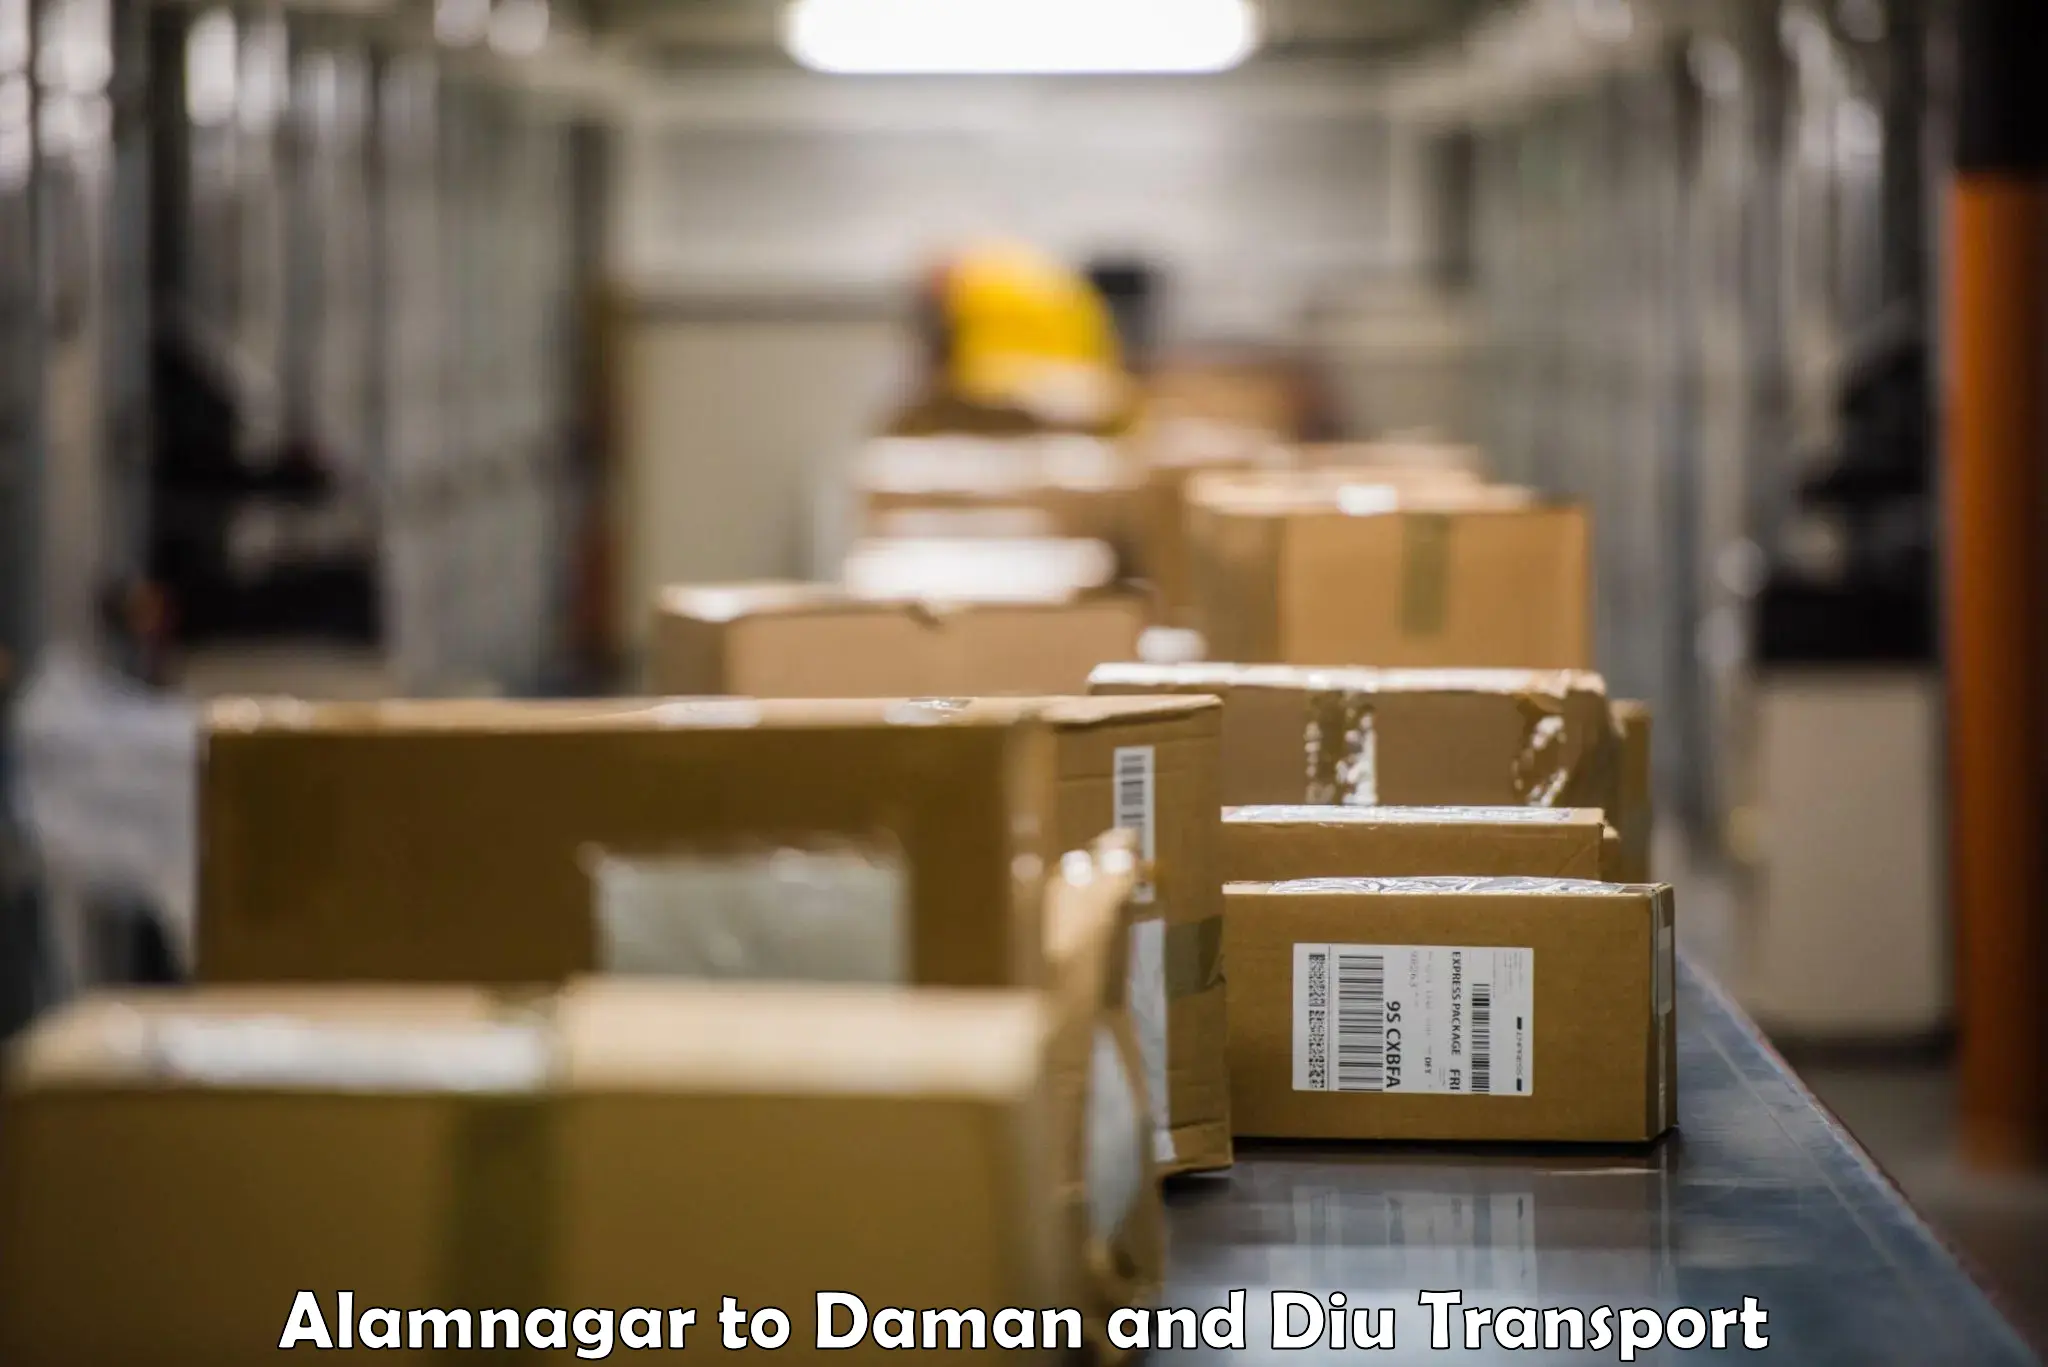 International cargo transportation services Alamnagar to Daman and Diu